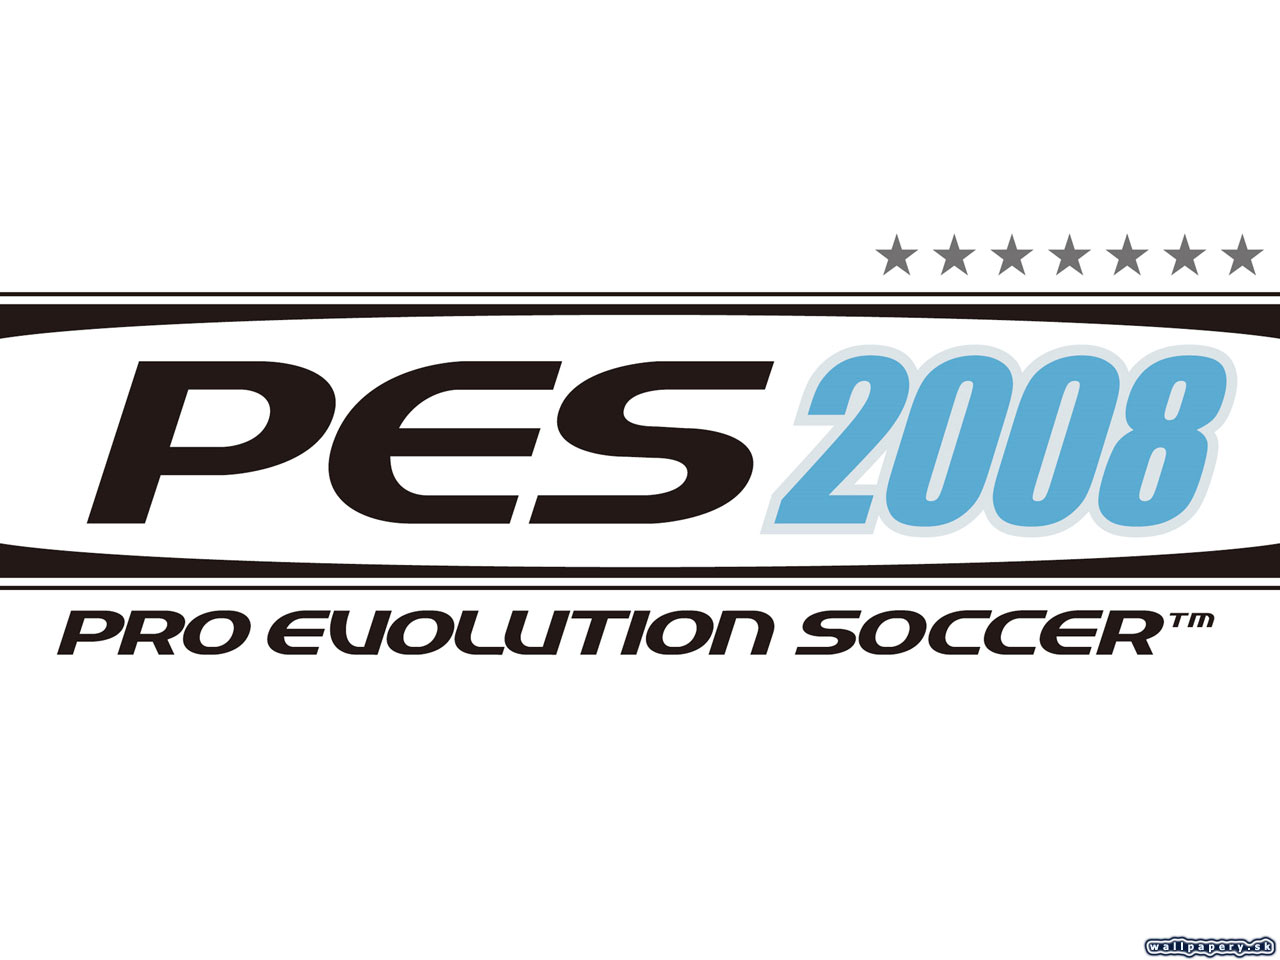 Pro Evolution Soccer 2008 - wallpaper 3